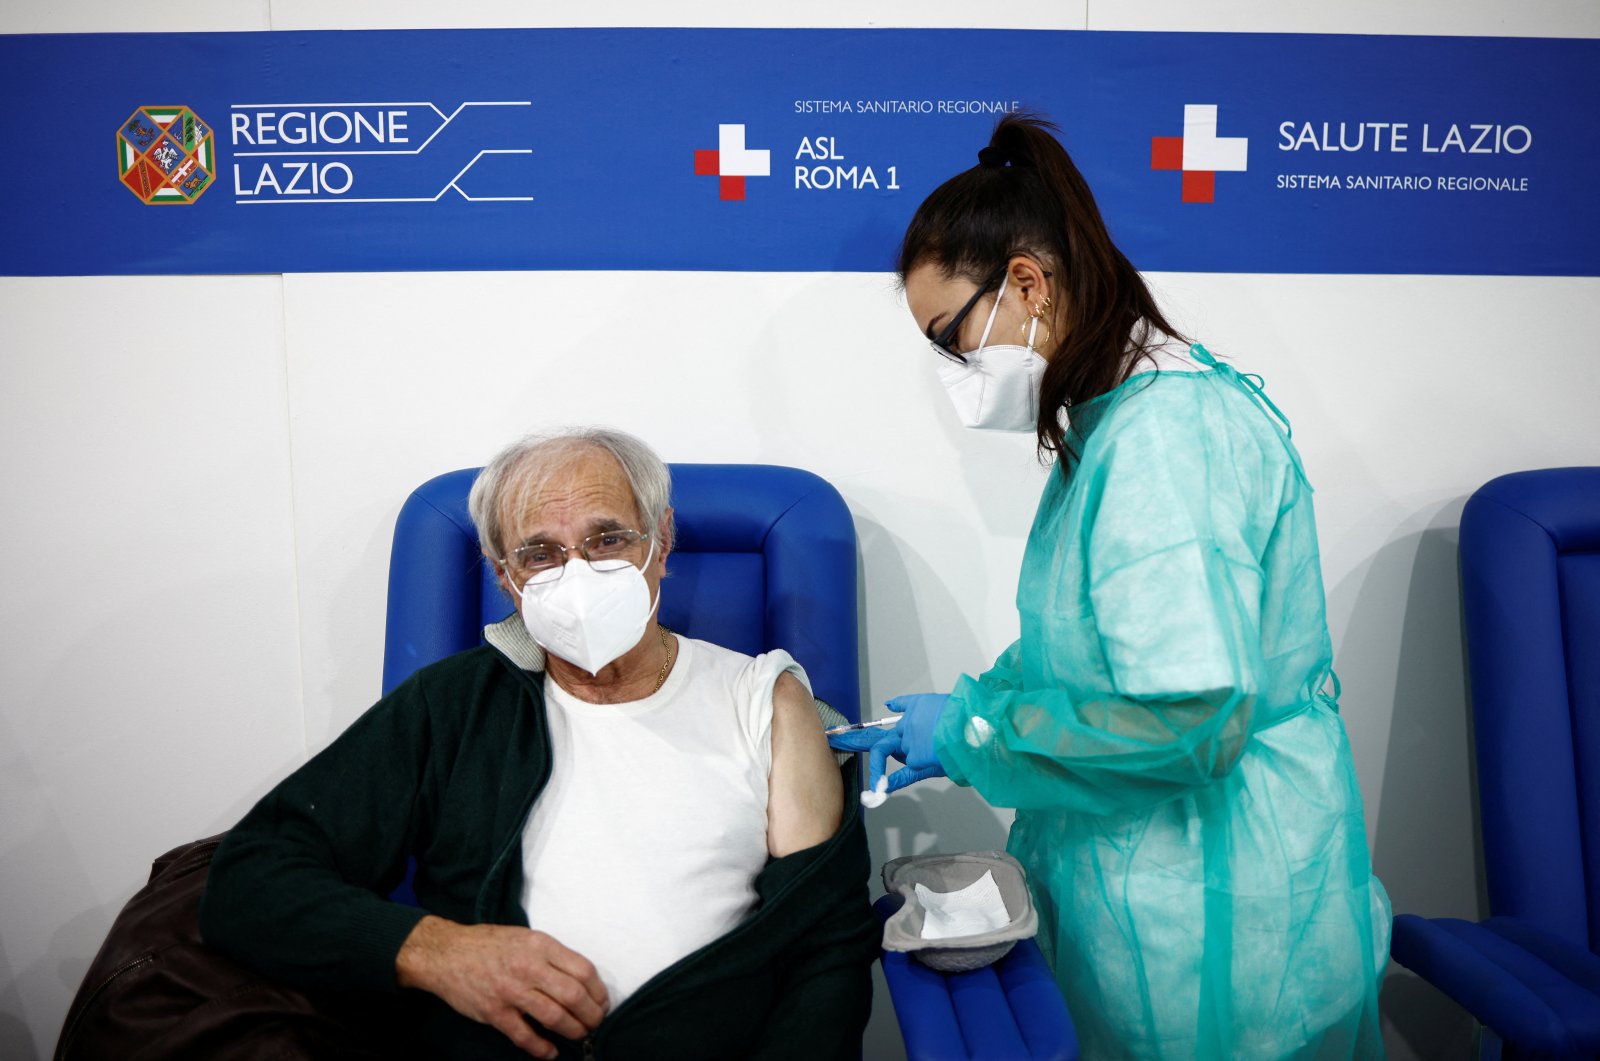 Italia akan mewajibkan vaksin COVID-19 untuk usia di atas 50-an